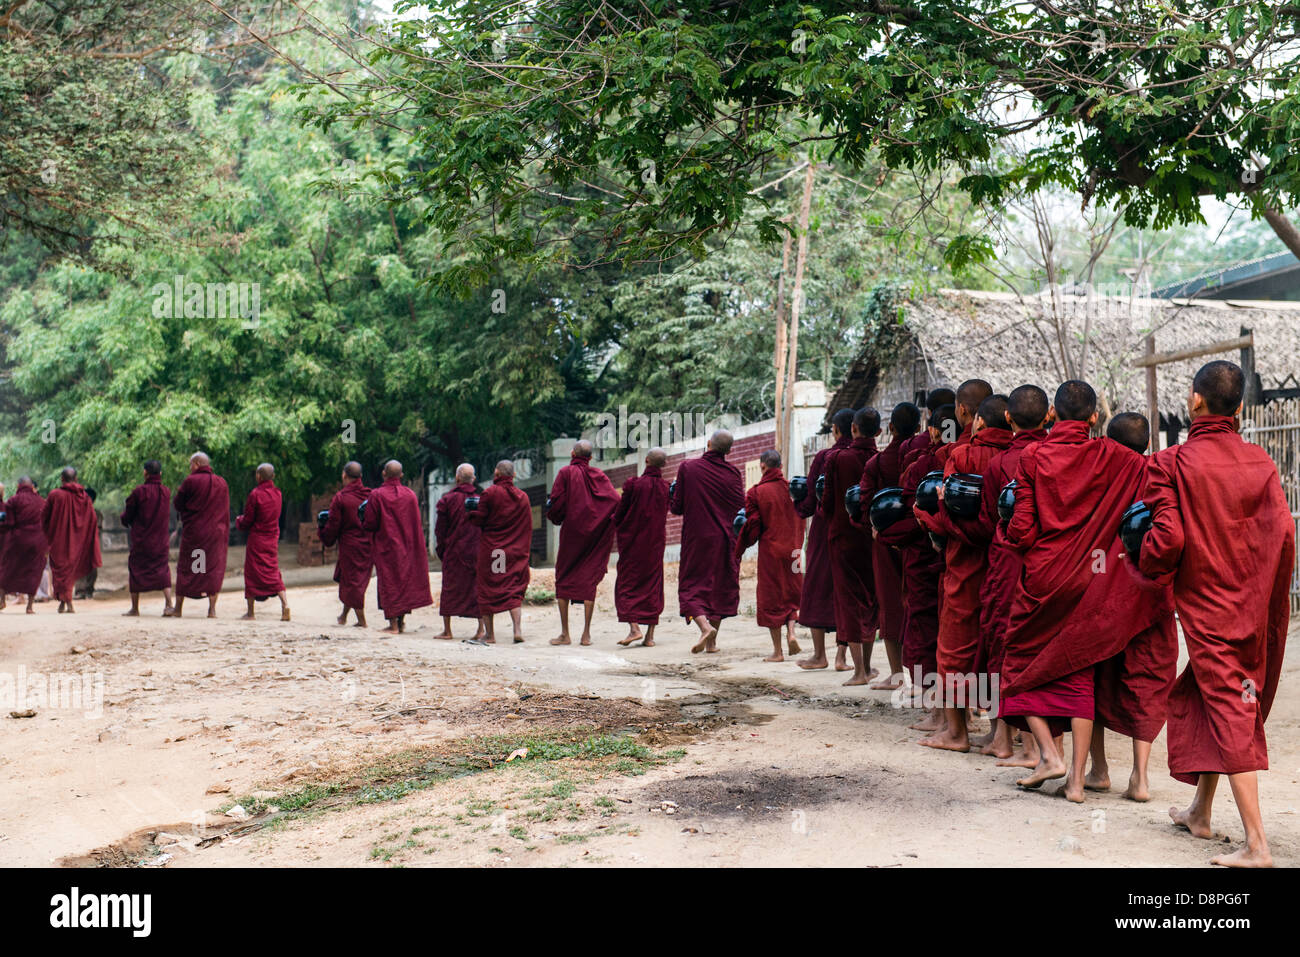 Les moines bouddhistes, la collecte de l'Aumône (ou boules) de nourriture dans la matinée des villageois près de Bagan Birmanie Myanmar Banque D'Images